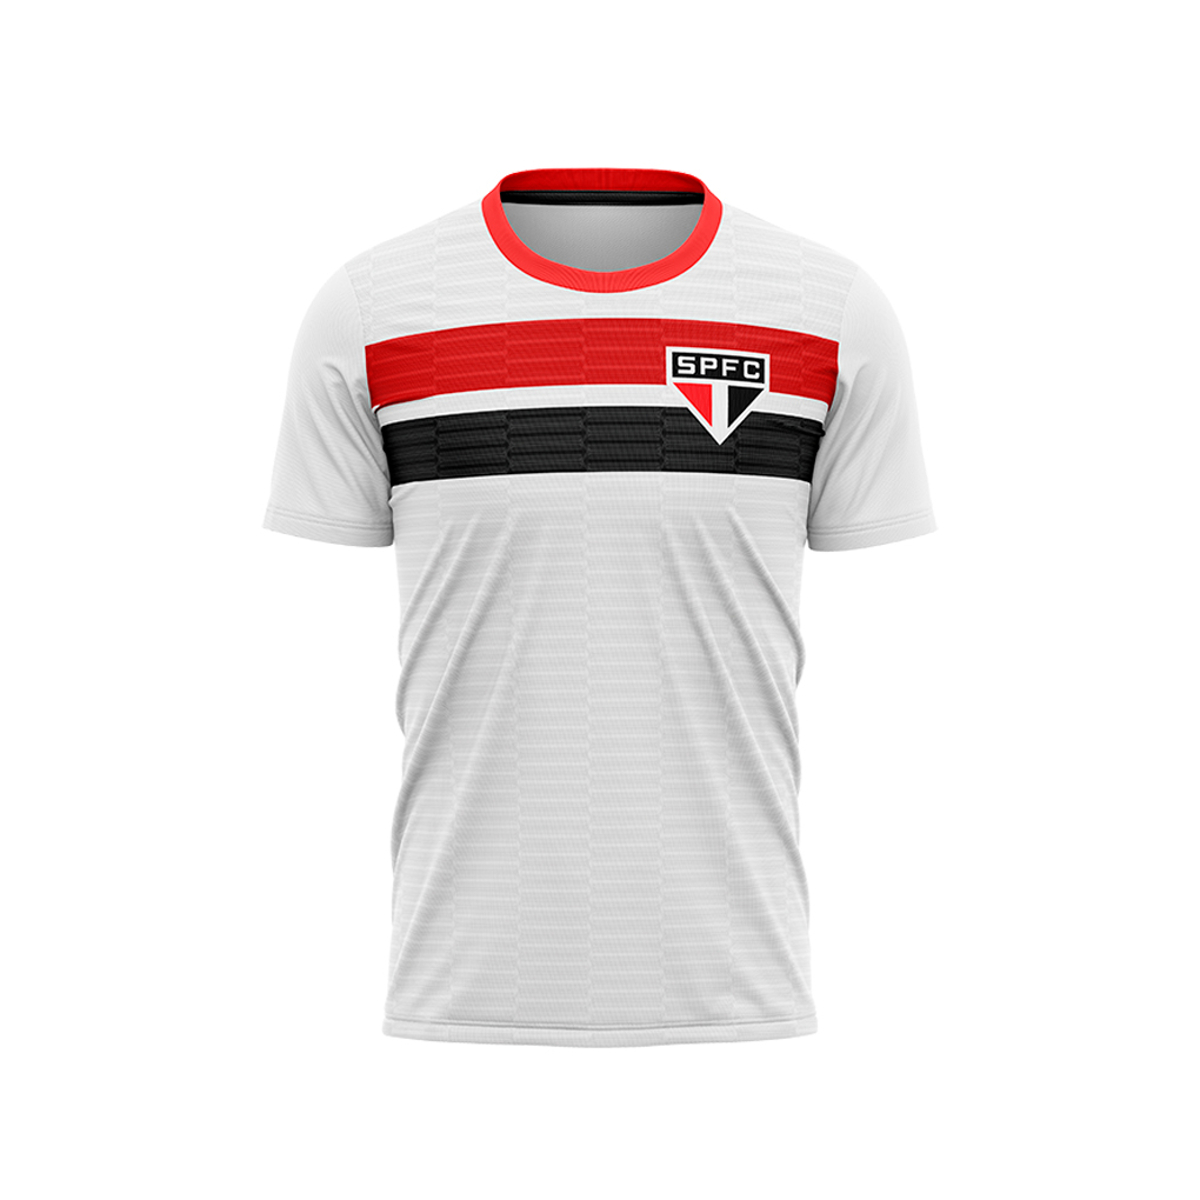 Kit São Paulo Oficial - Camisa Realistic + Caneca + Chaveiro - Masculino